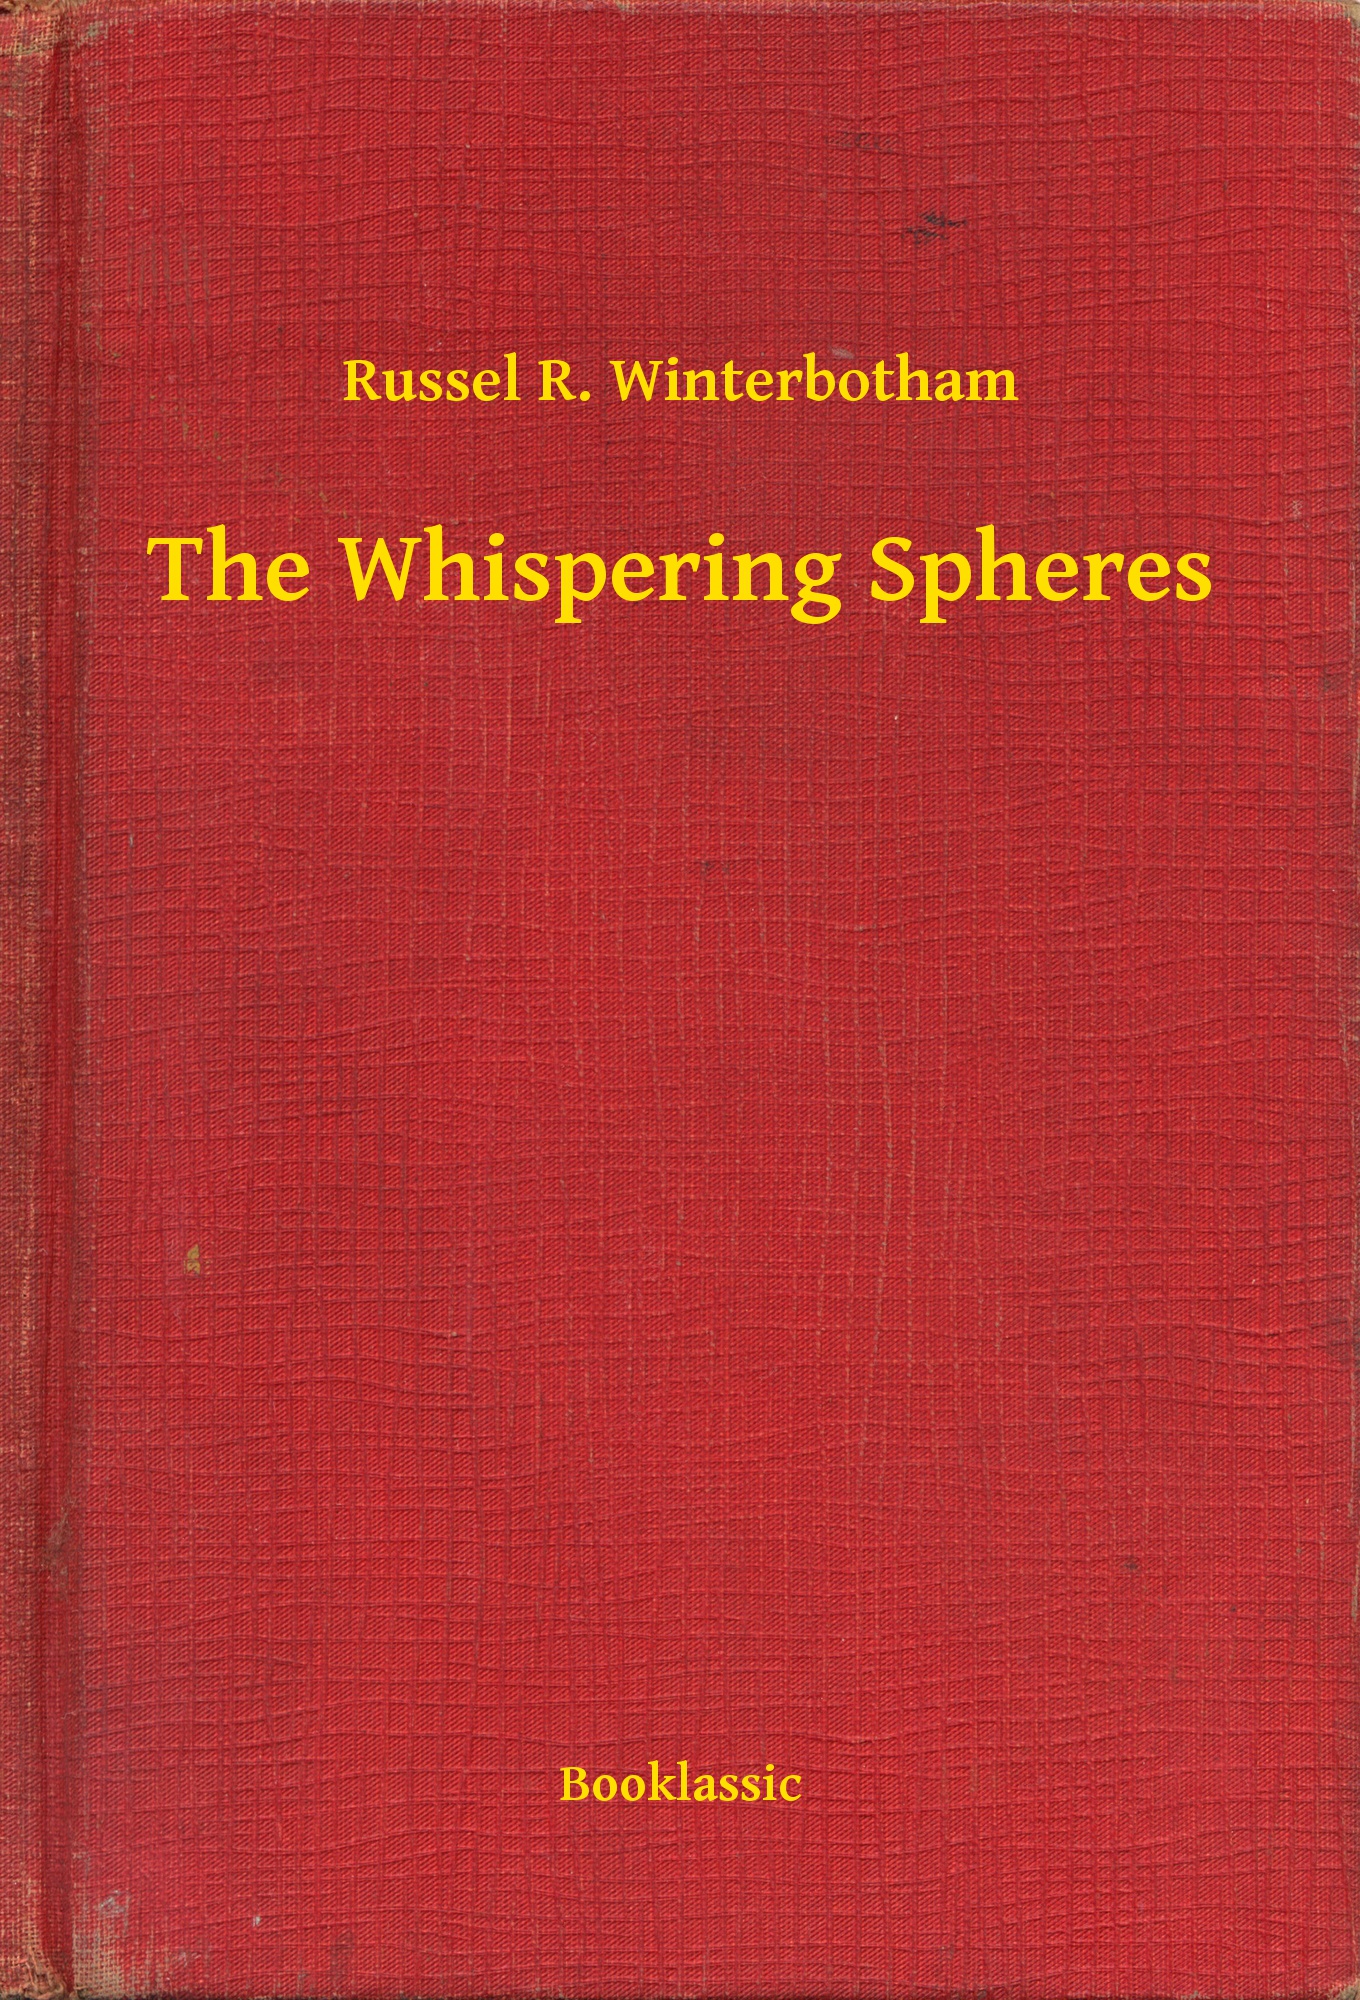 The Whispering Spheres